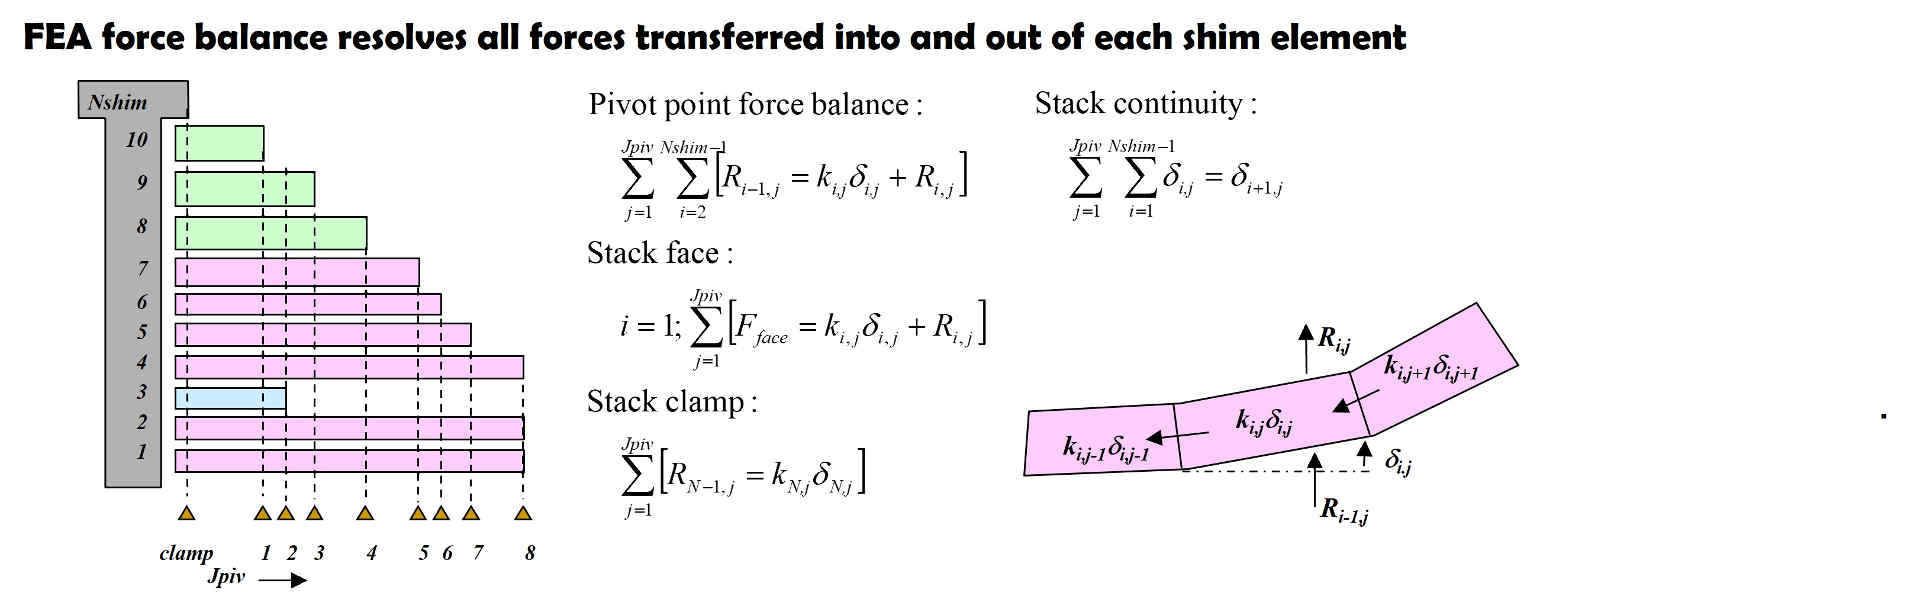 FEA shim stack force balance